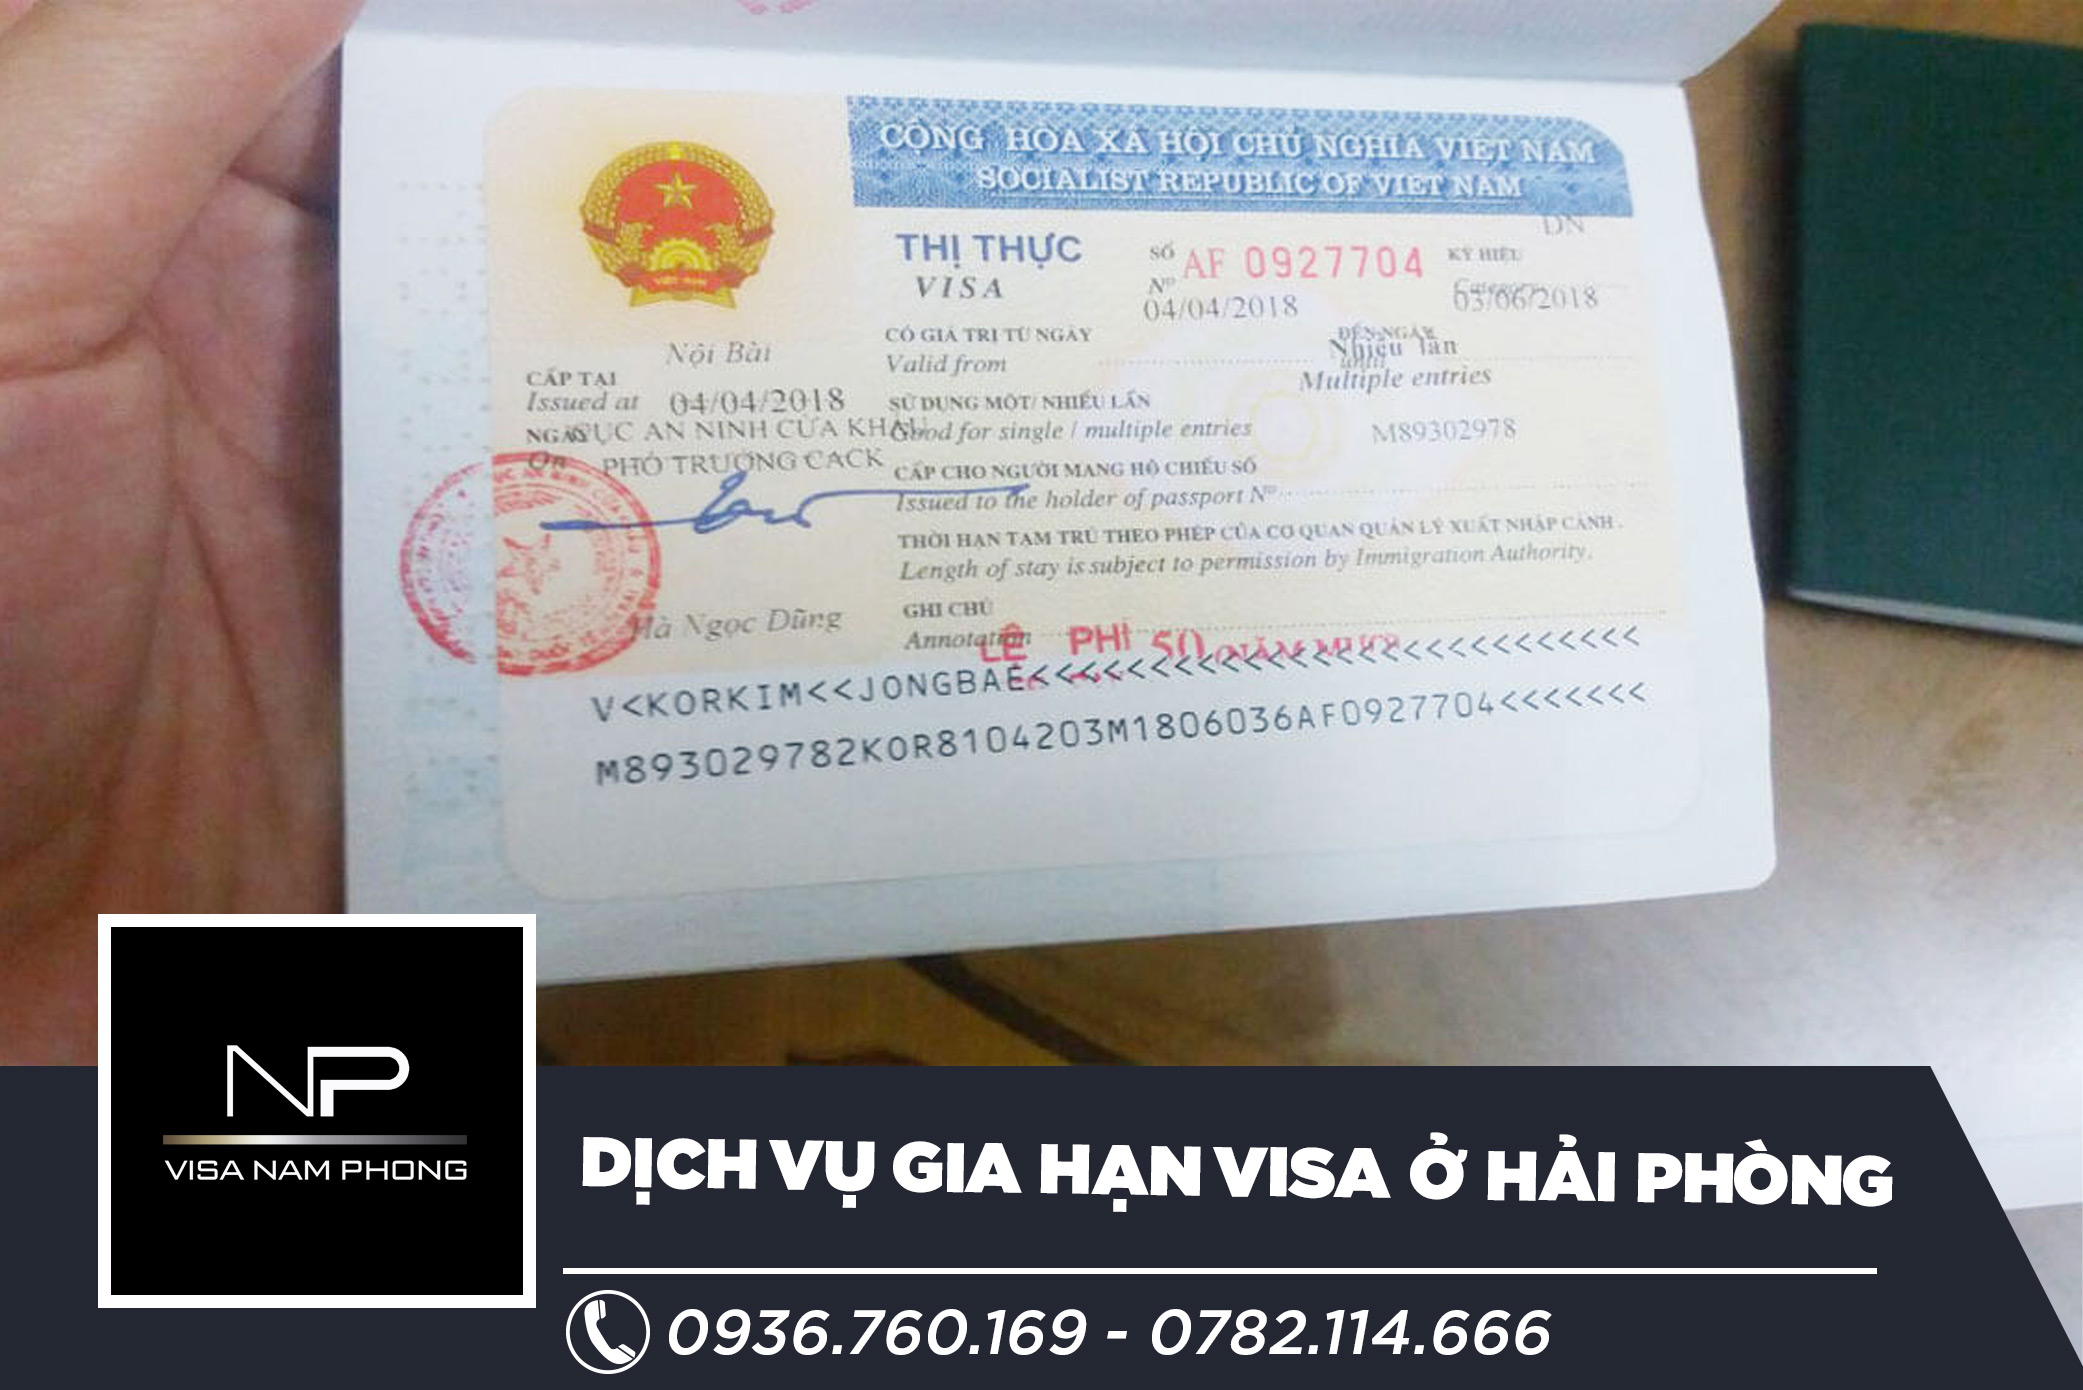 Dịch vụ gia hạn visa ở hải phòng